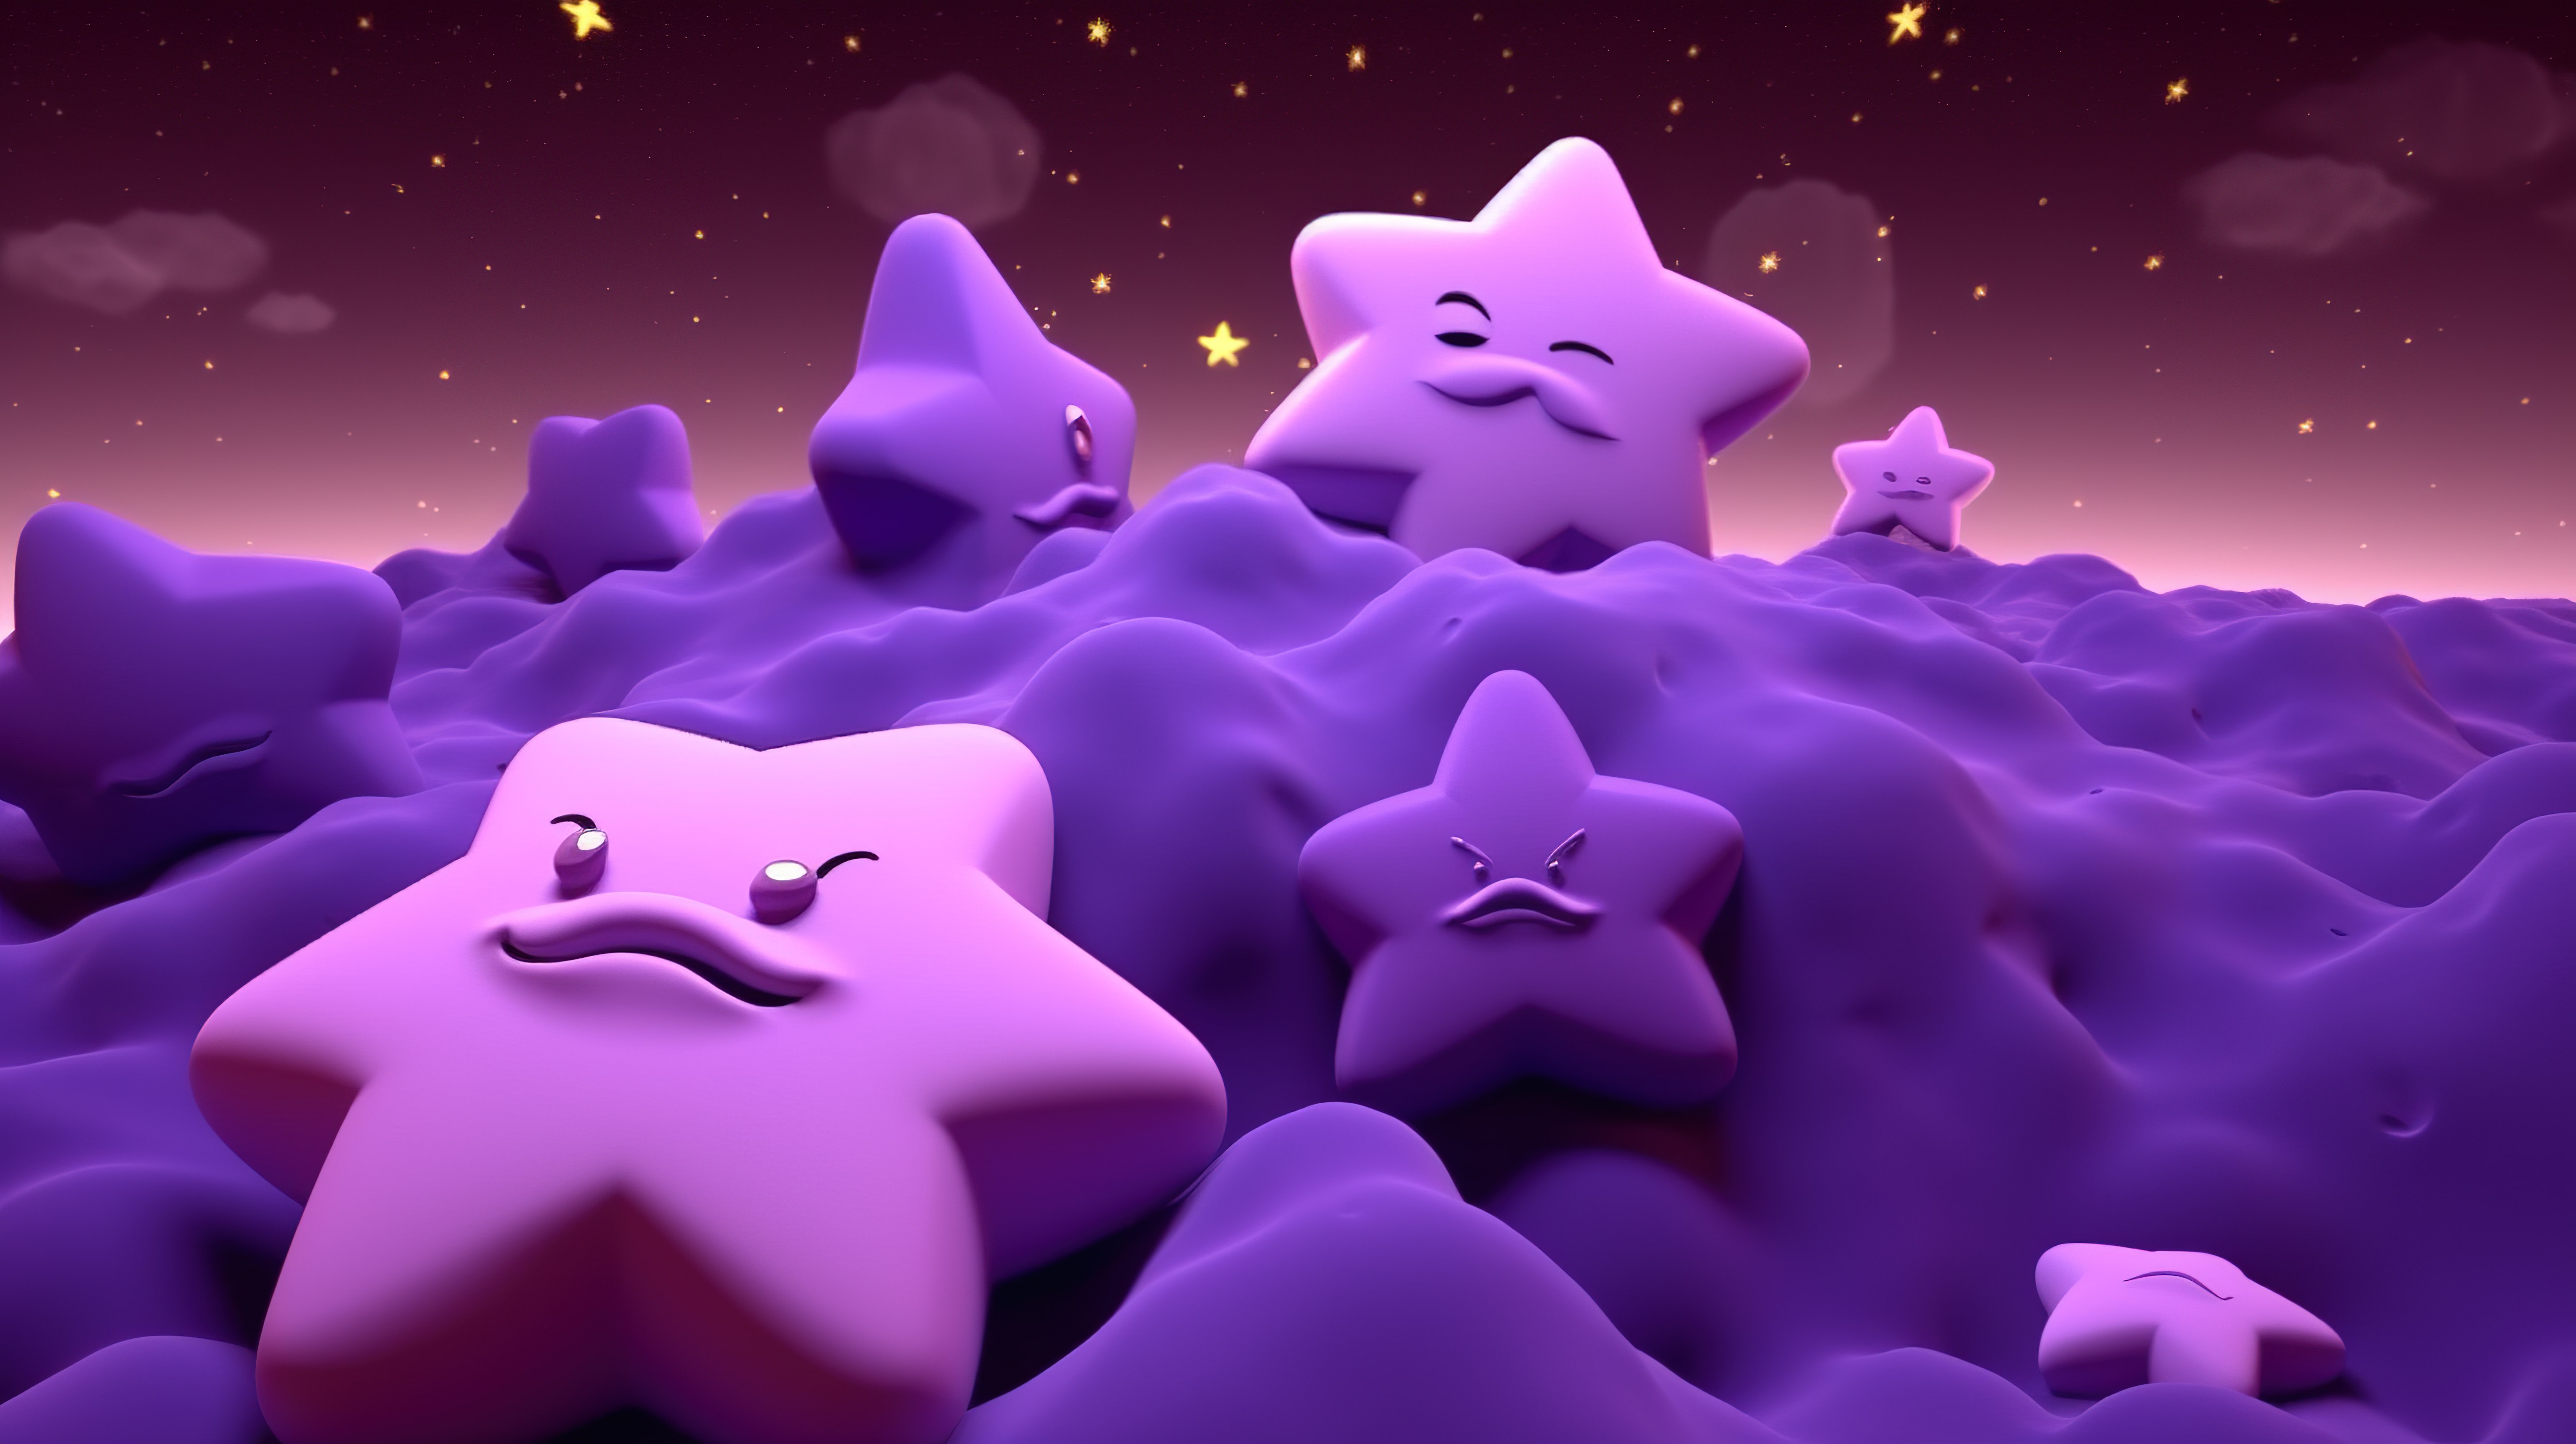 以 3d 呈现的紫色天空中的可爱星星图片